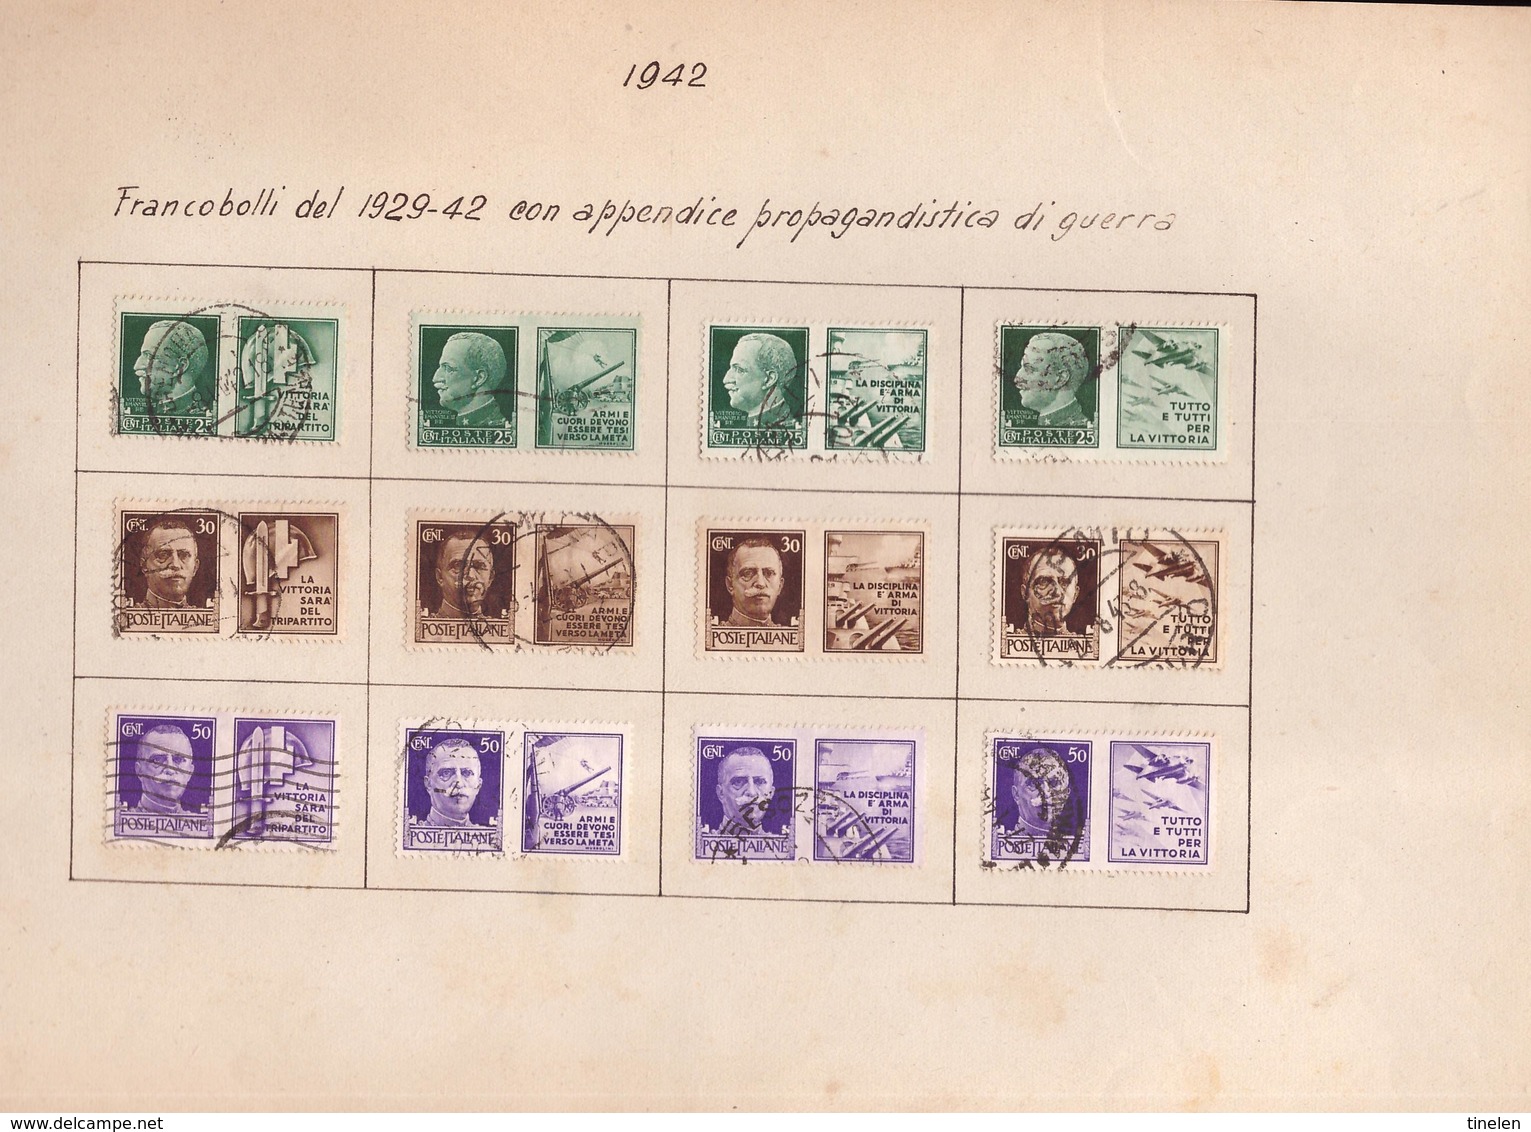 Italia - parte collezione da regno 1926 a repubblica 1950 ( vedi scan)